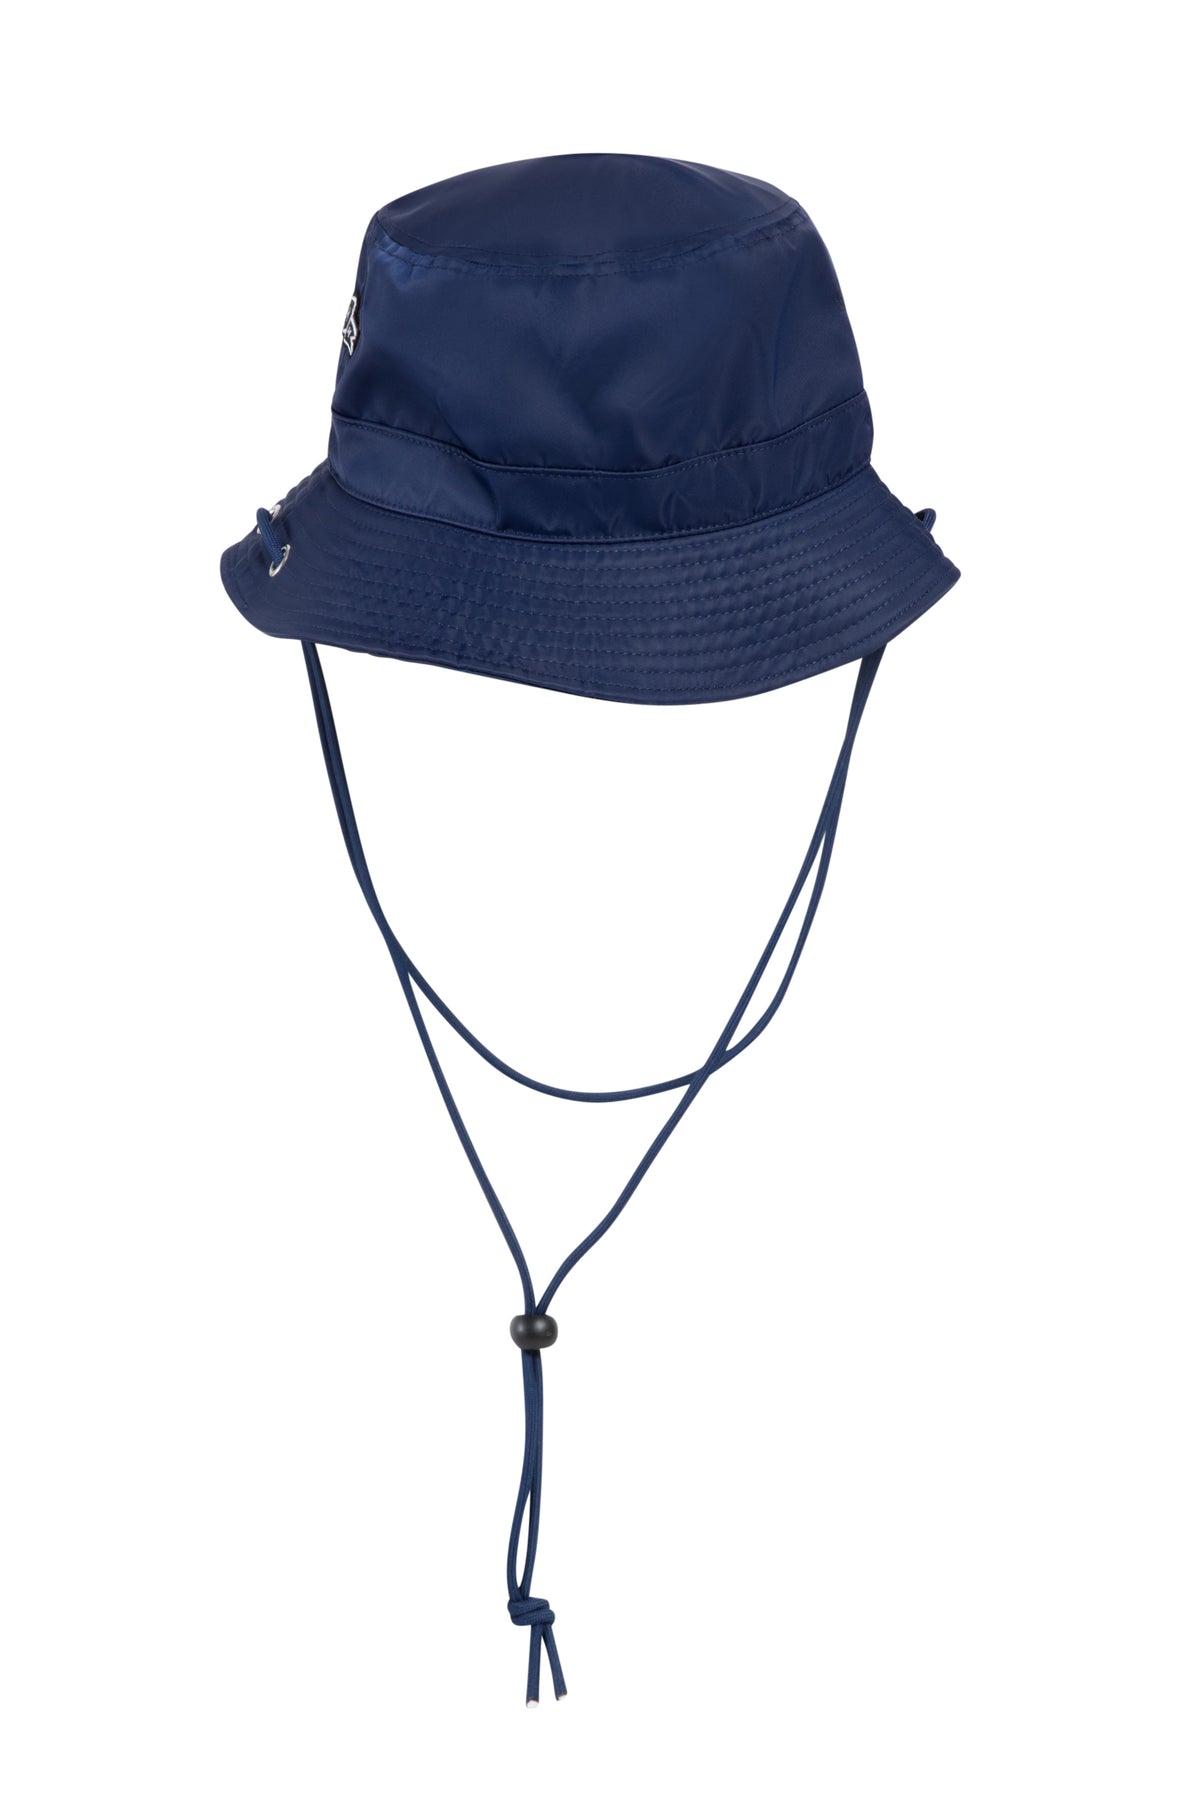 Penn State Waterproof Bucket Hat